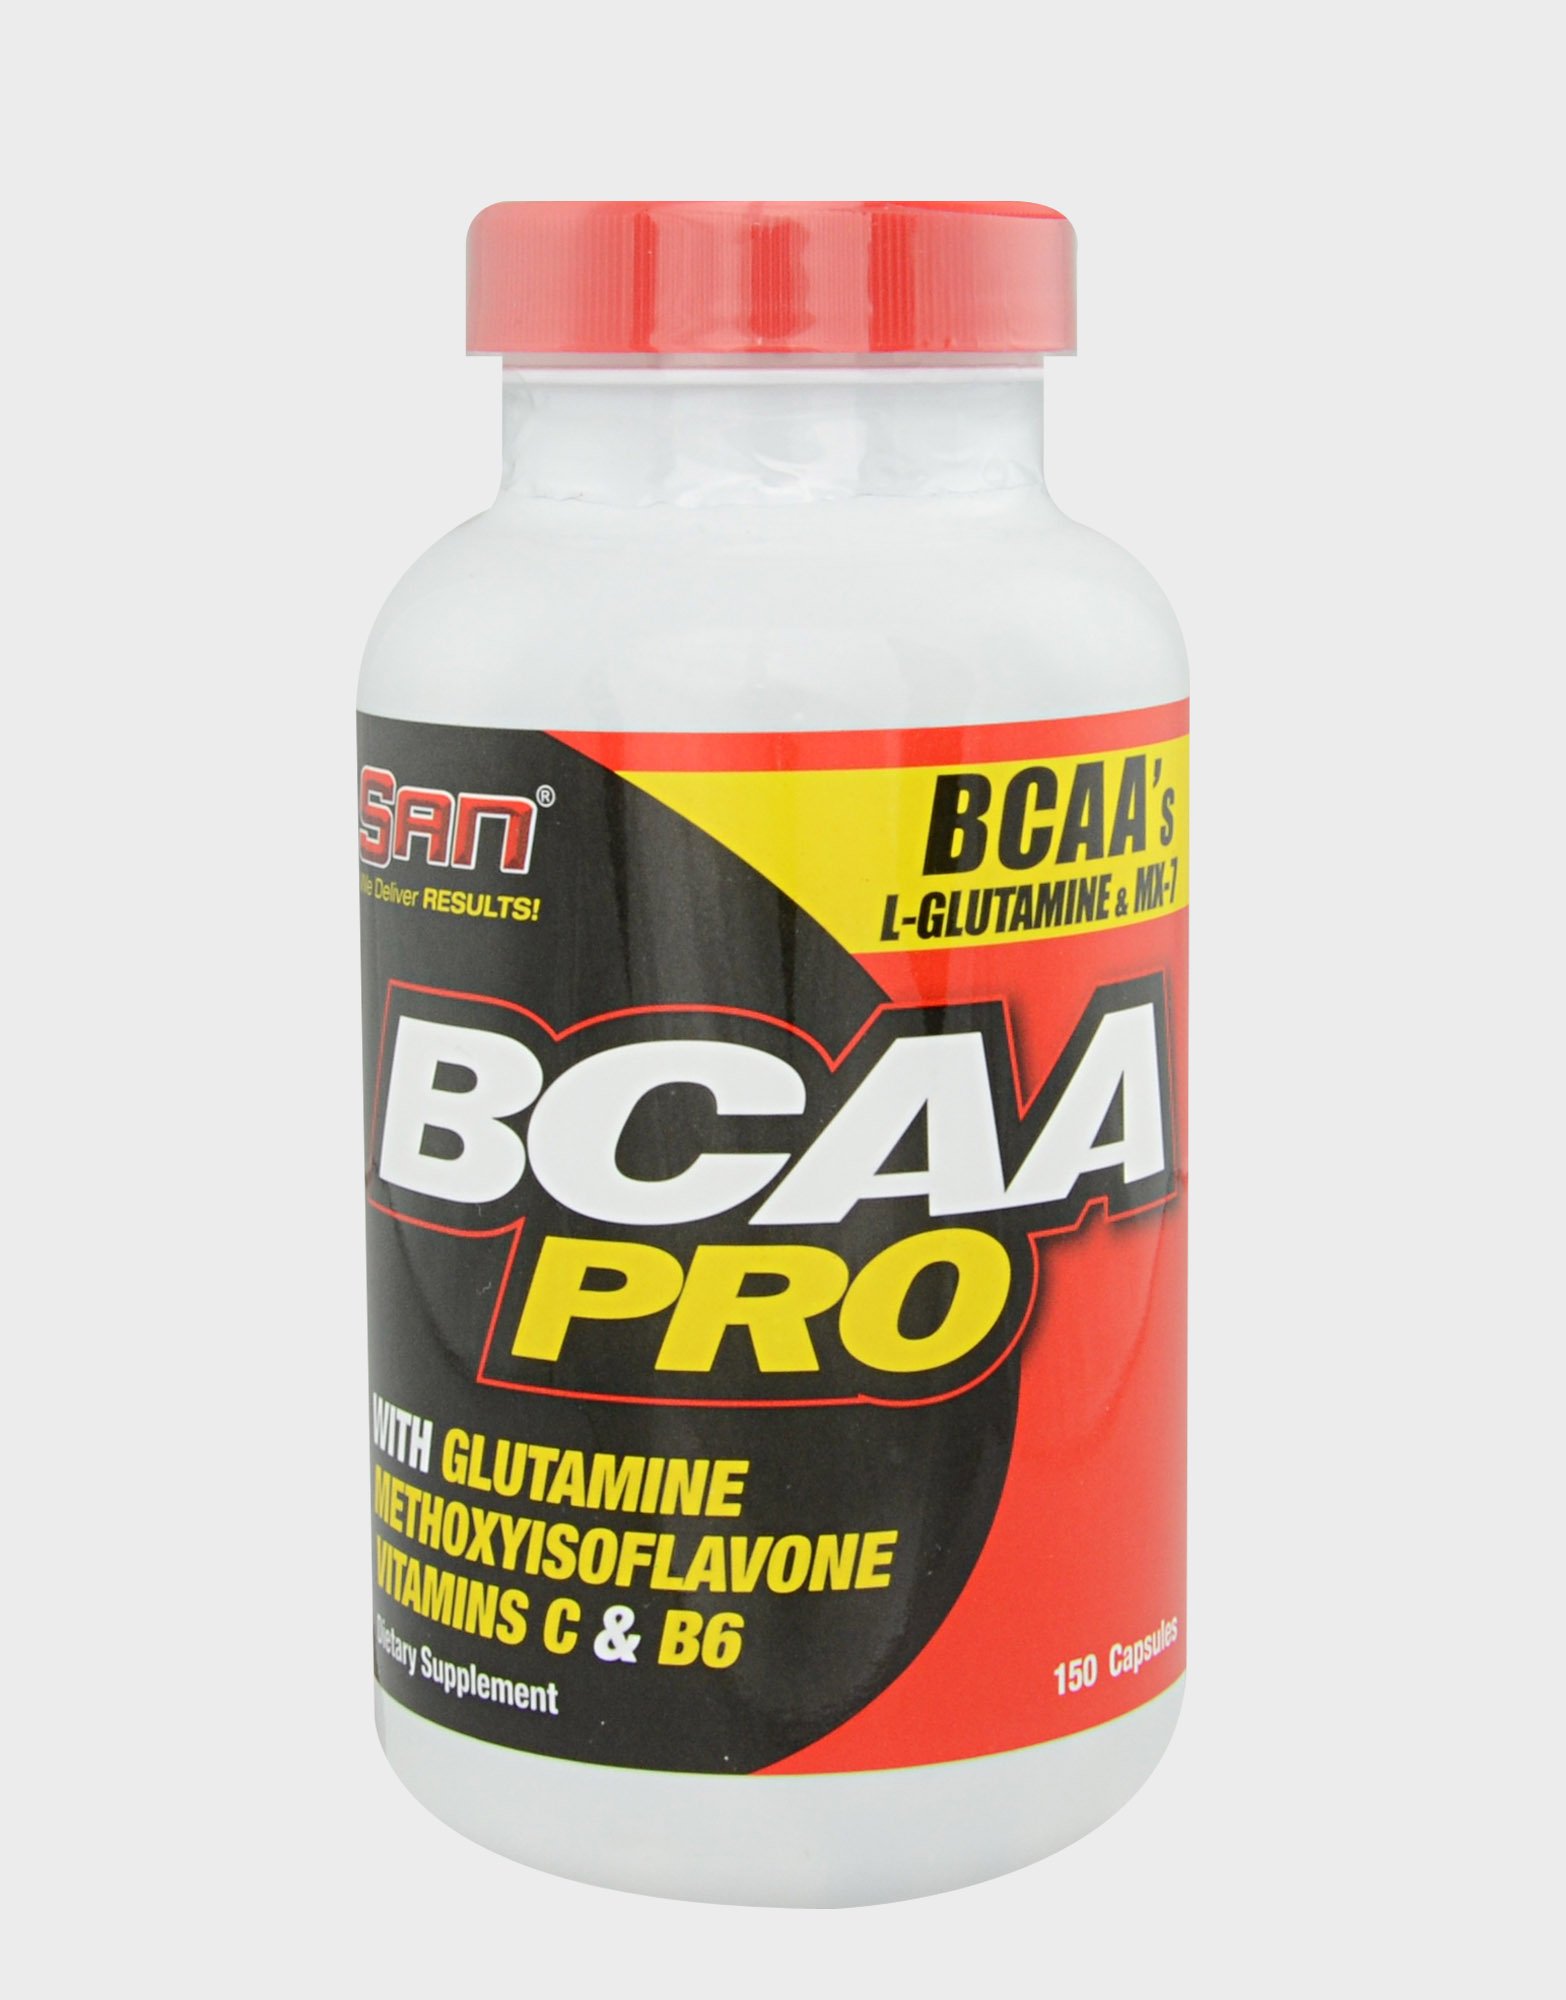 BCAA Pro, 150 pcs, San. BCAA. Weight Loss स्वास्थ्य लाभ Anti-catabolic properties Lean muscle mass 